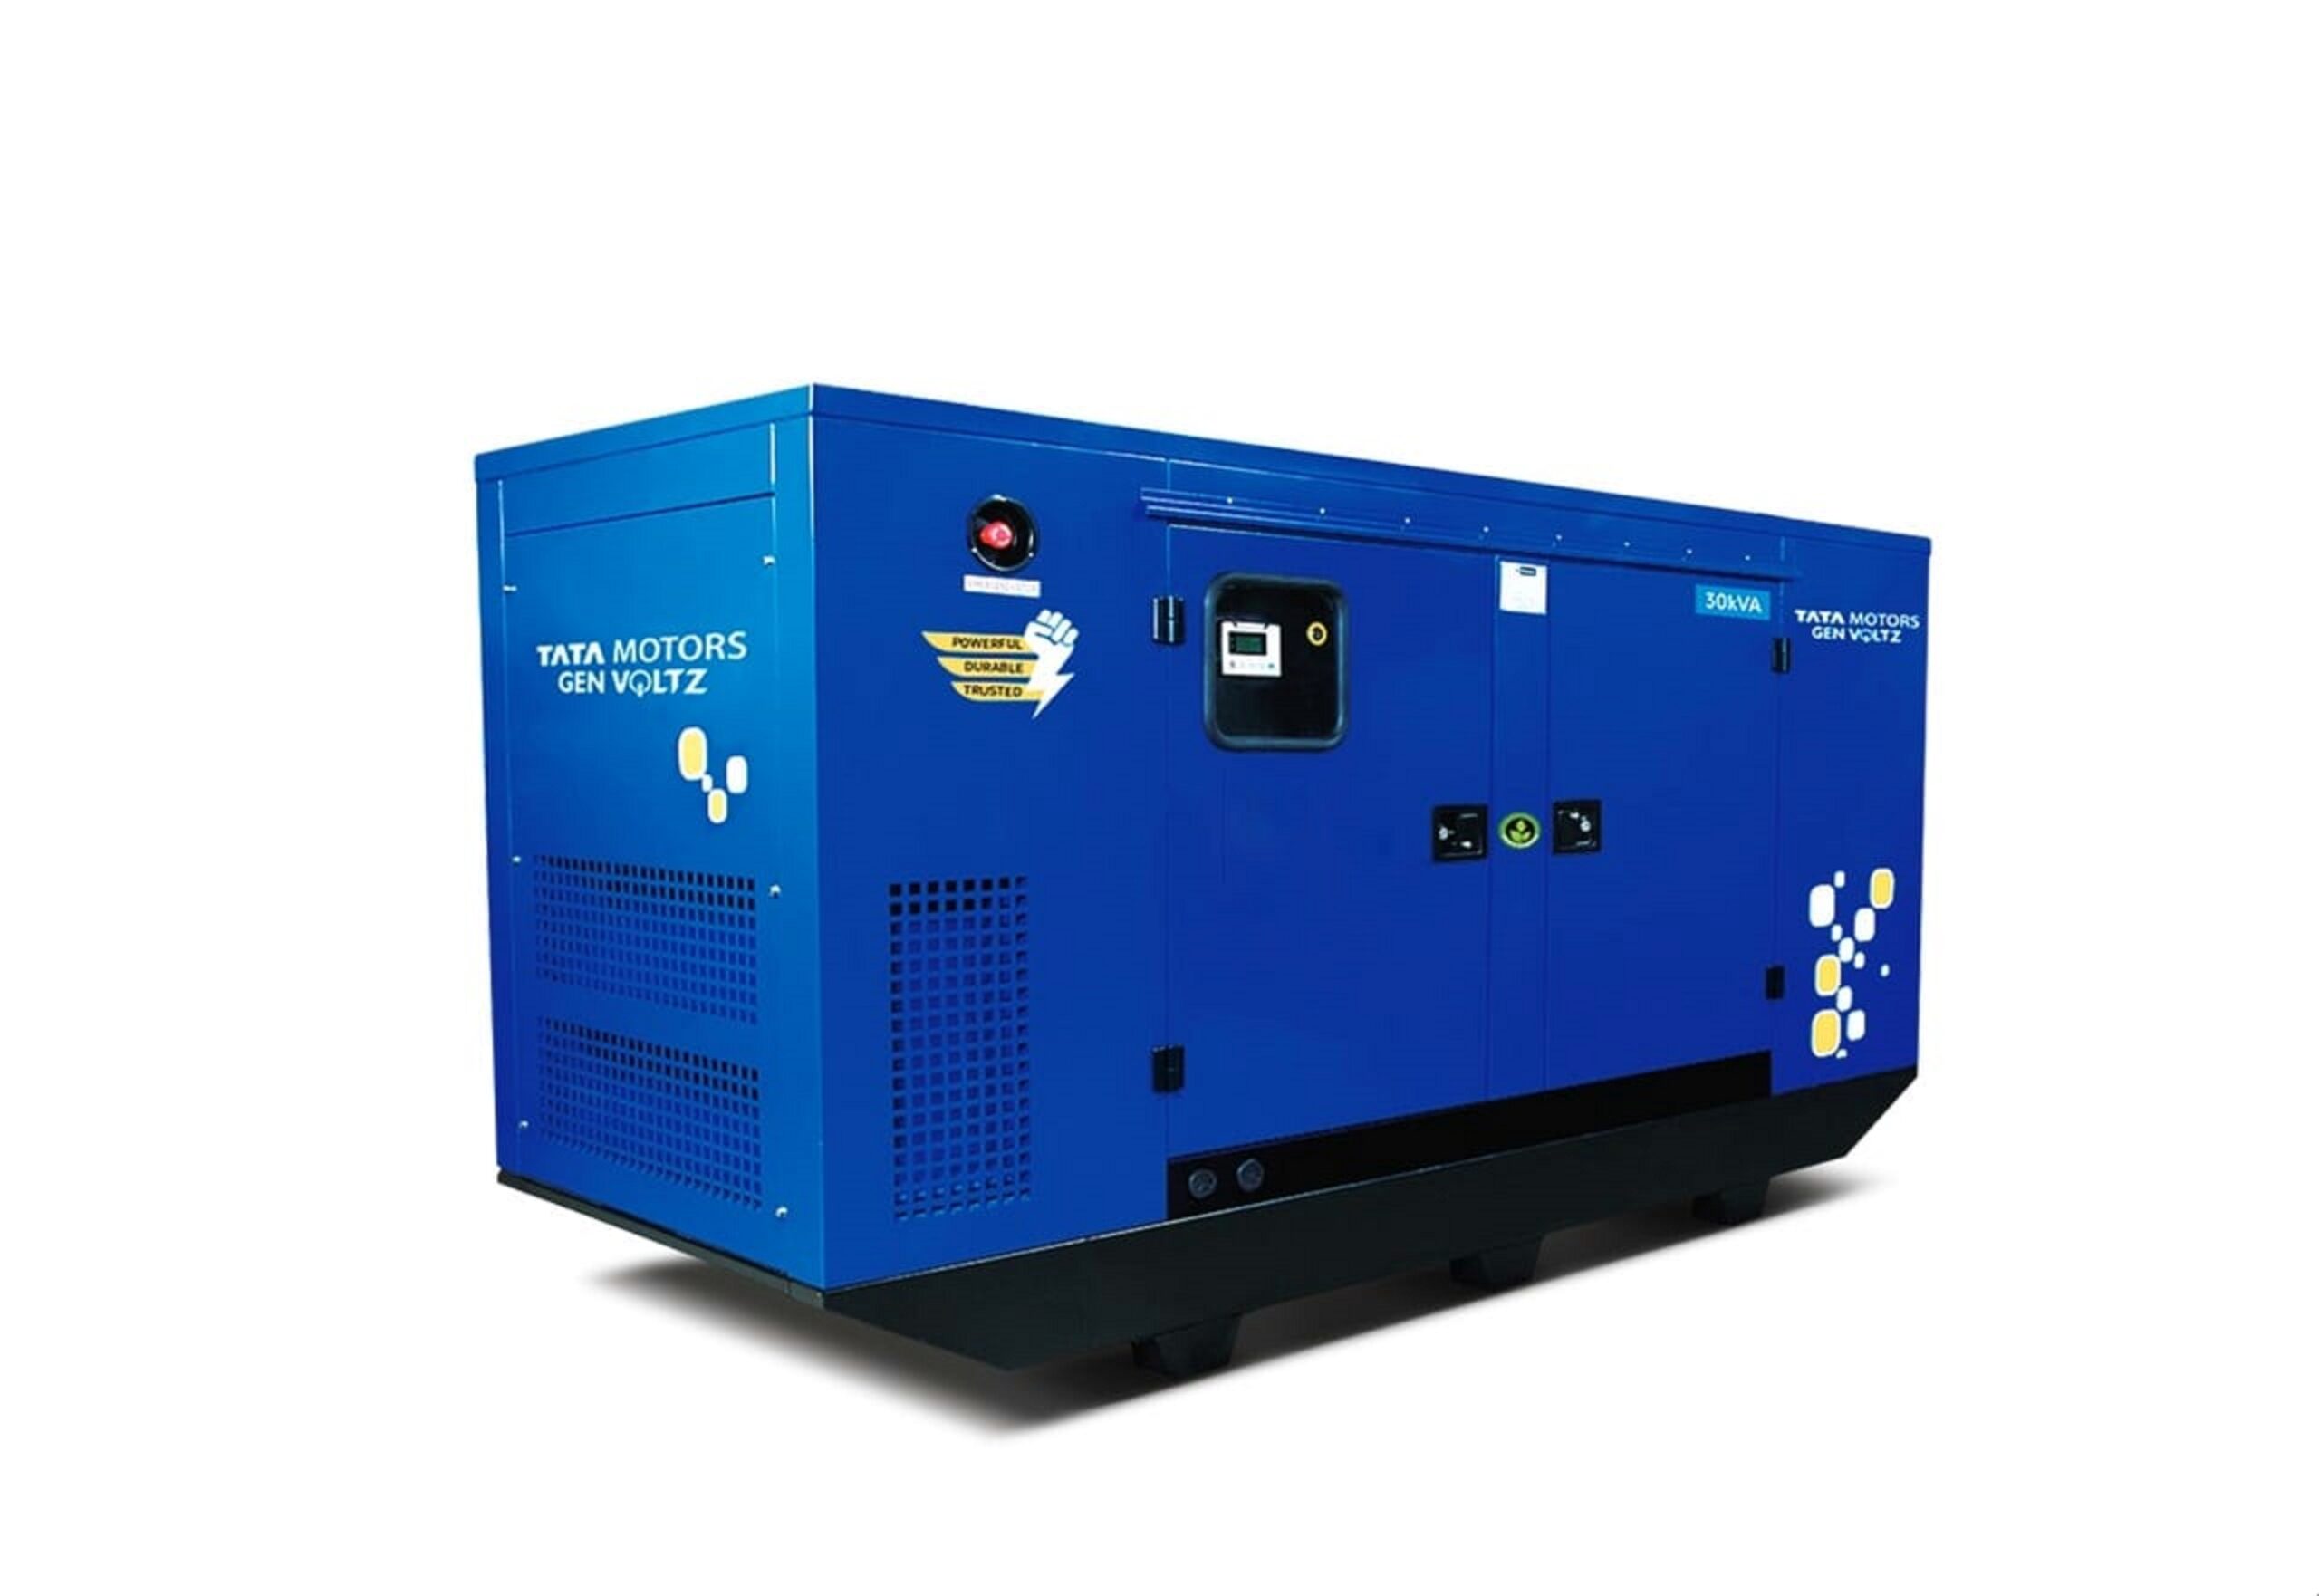 Tata Motors Launches GenVoltz Generators